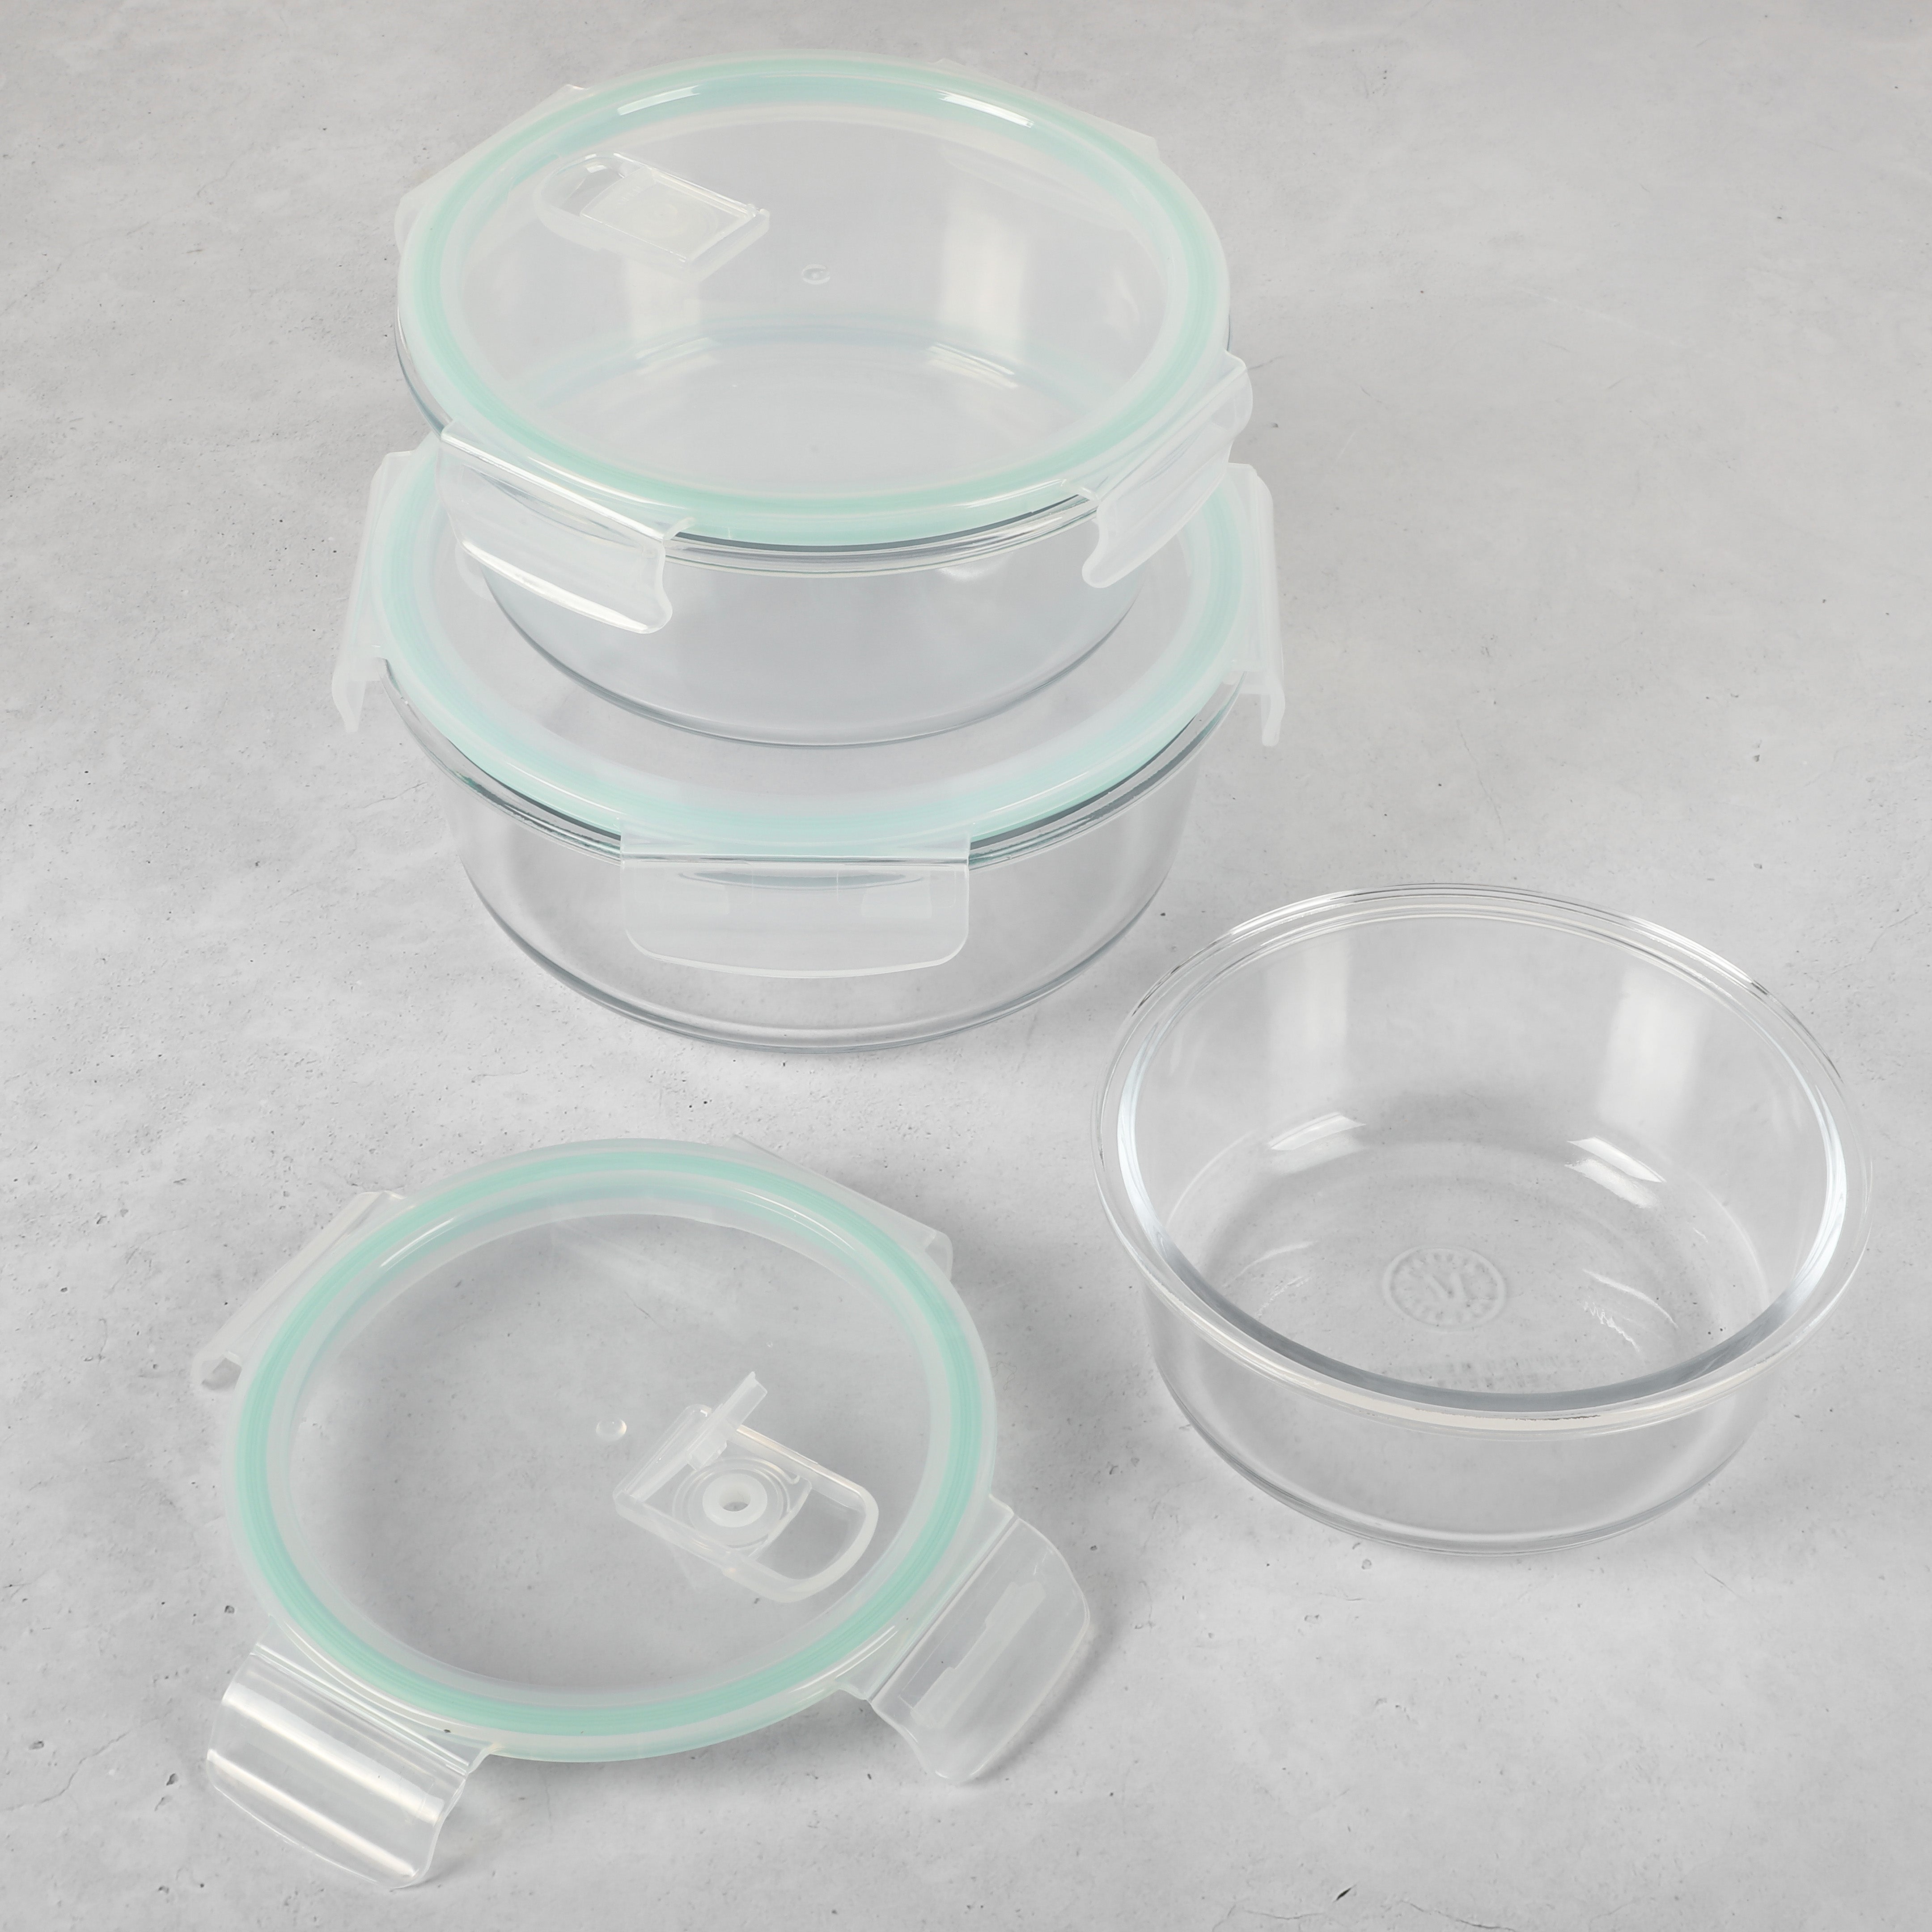 Martha Stewart Lamoine 6-Piece (44oz, 32oz, 22oz) Round Borosilicate Glass Storage Container Set w/ Lids